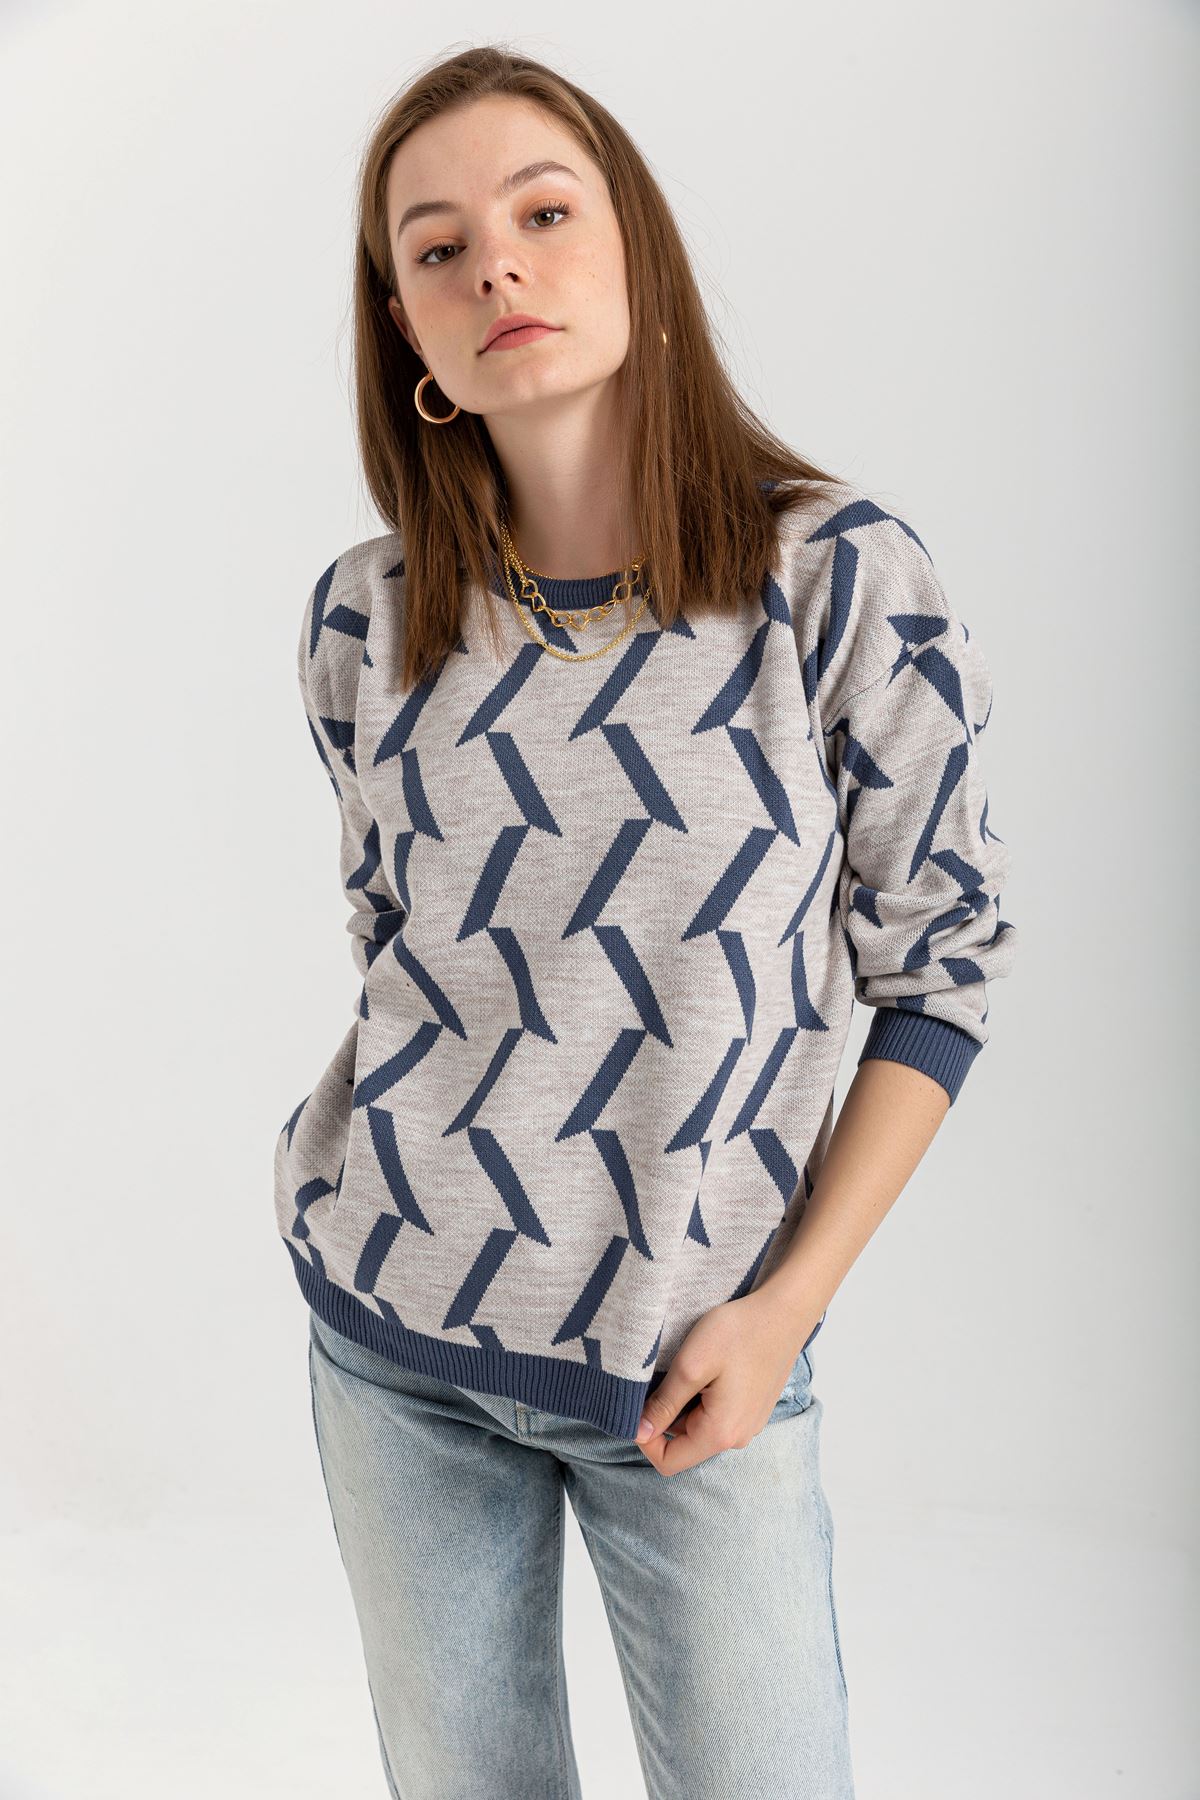 Knitwear Fabric Long Sleeve Bicycle Collar Geometric Print Women Sweater - Grey